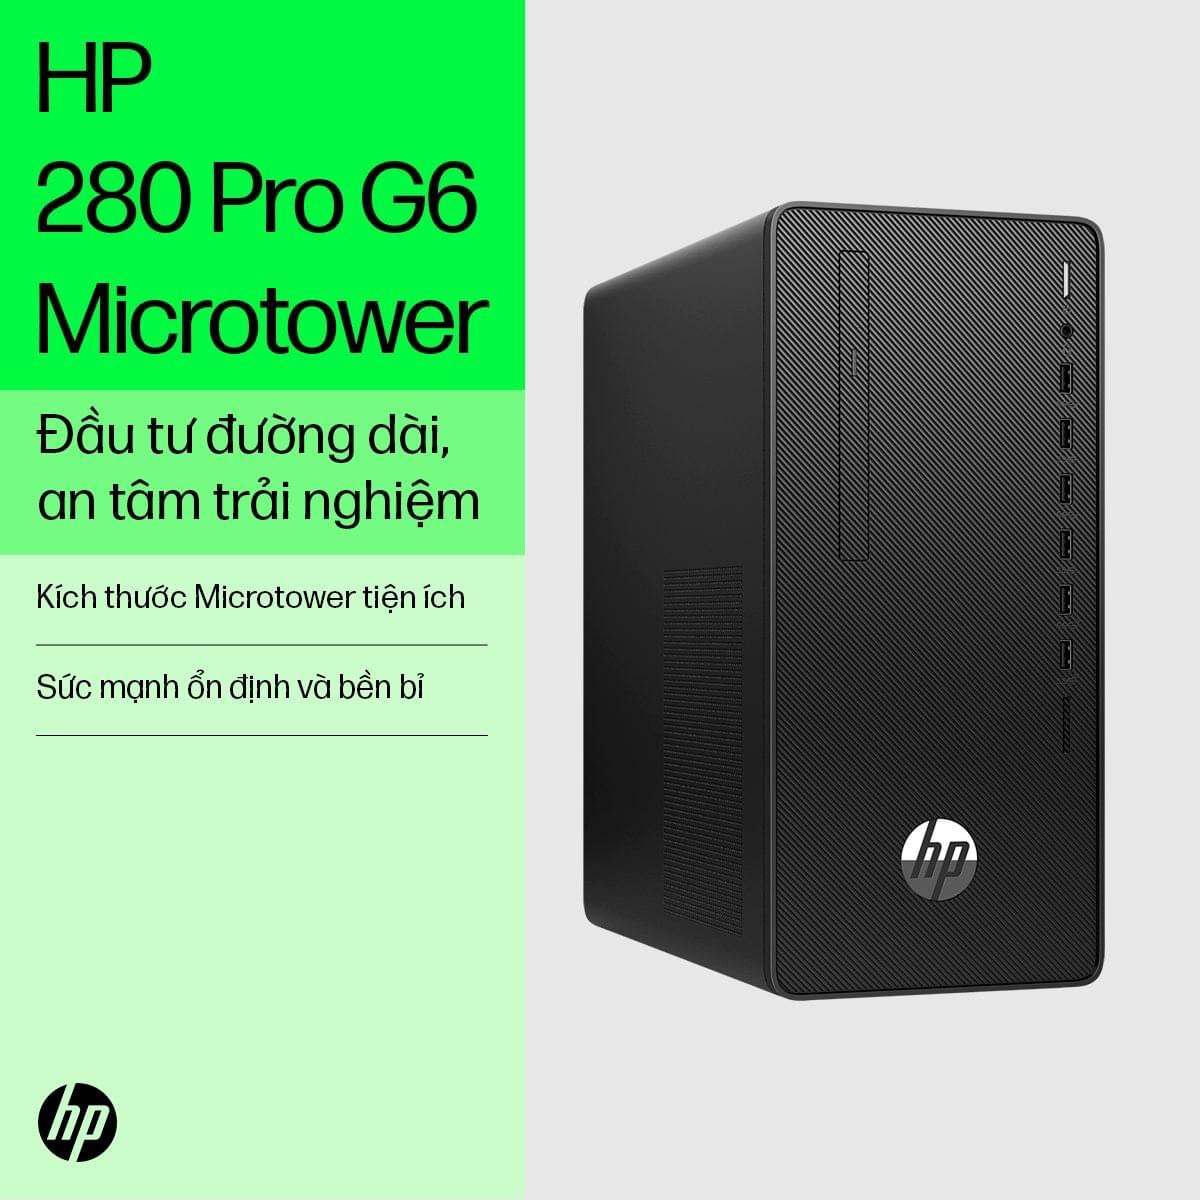 Cứu cánh nỗi lo của doanh nghiệp trong việc lựa chọn máy tính để bàn cho văn phòng với HP 280 Pro G6